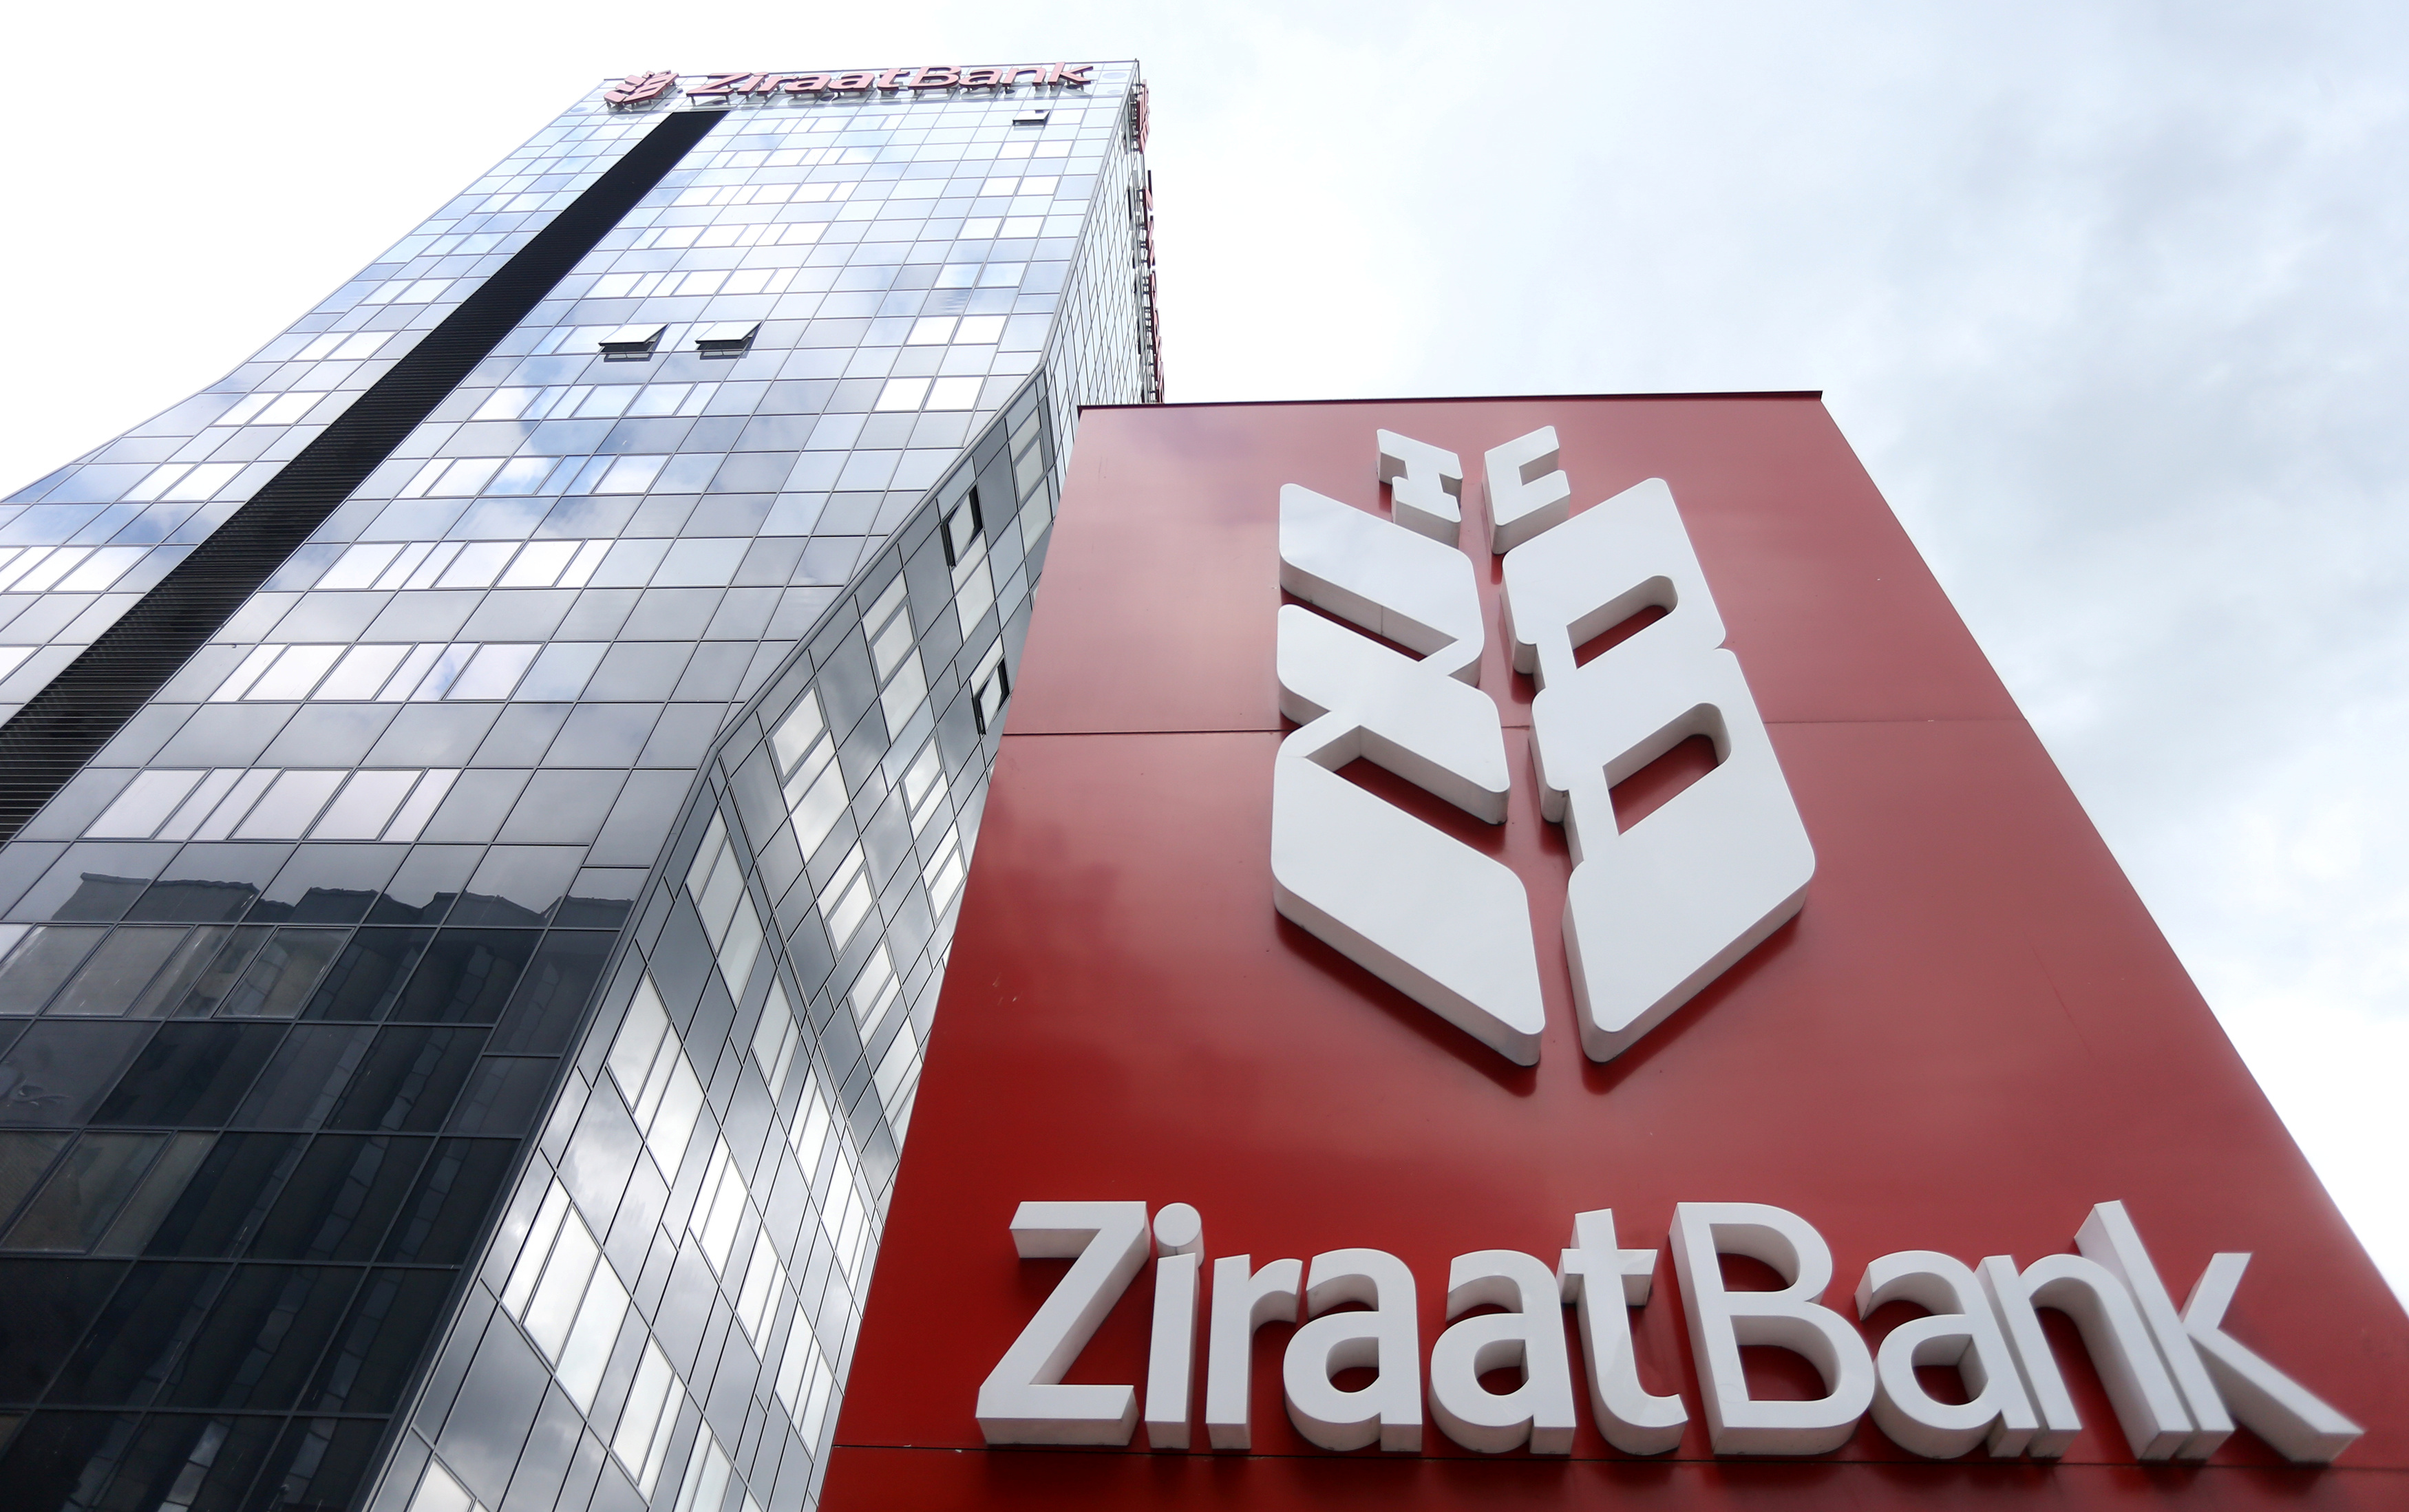 Turkey's Ziraat Bank tower is seen in Sarajevo